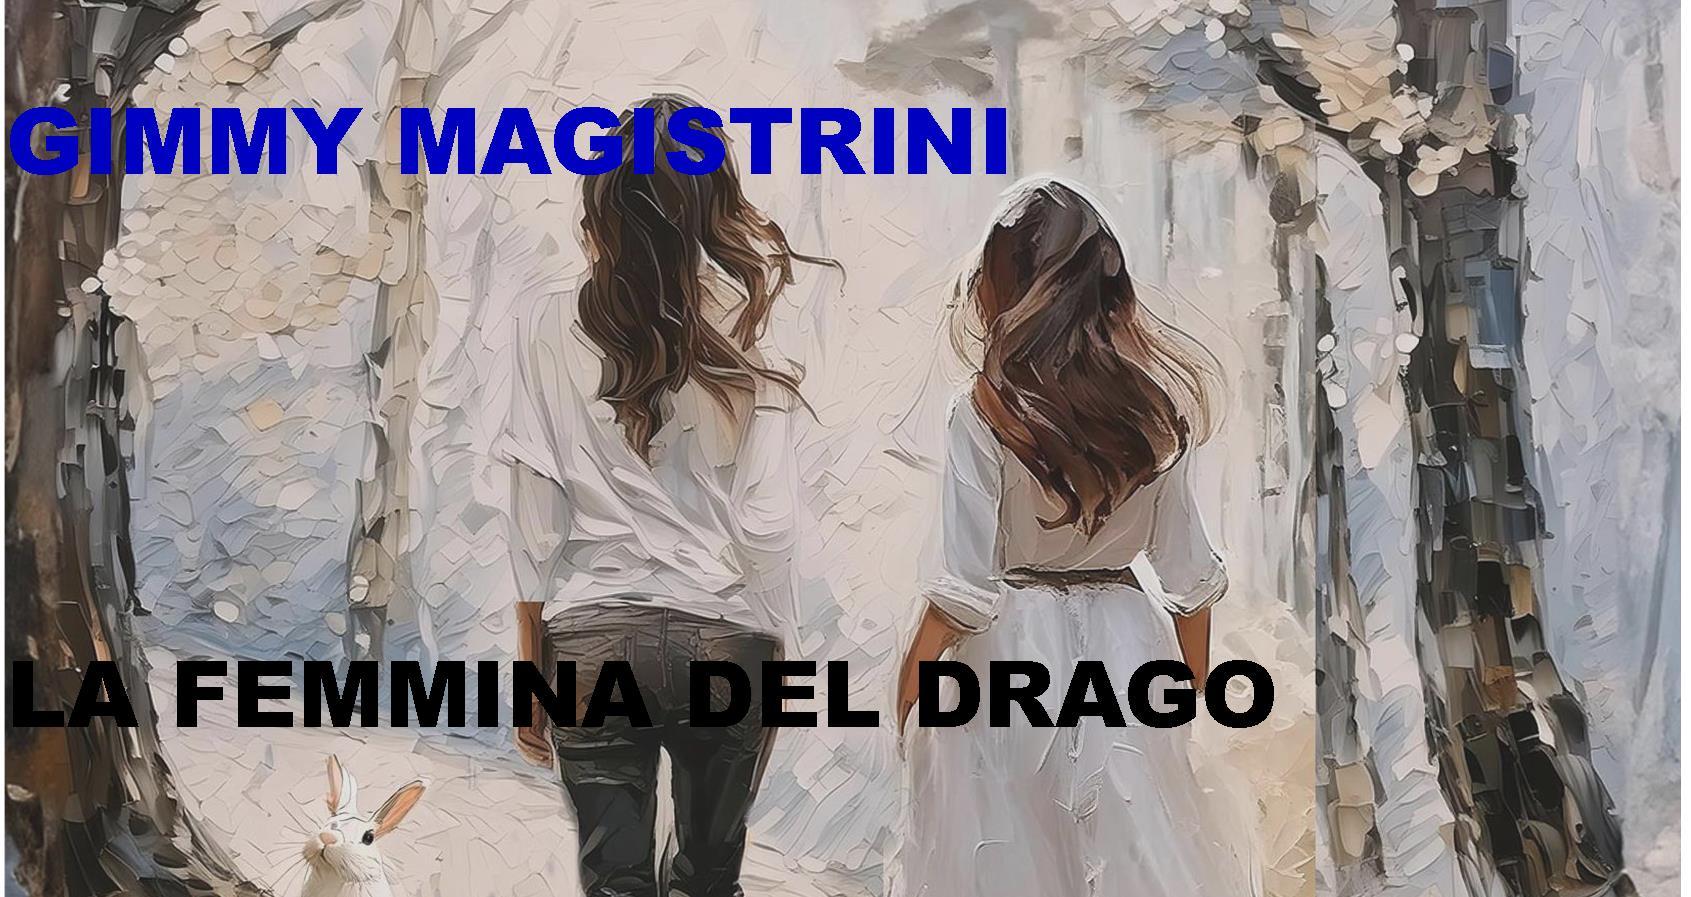 La femmina del Drago, il primo romanzo di Gimmy Magistrini arriva in libreria.